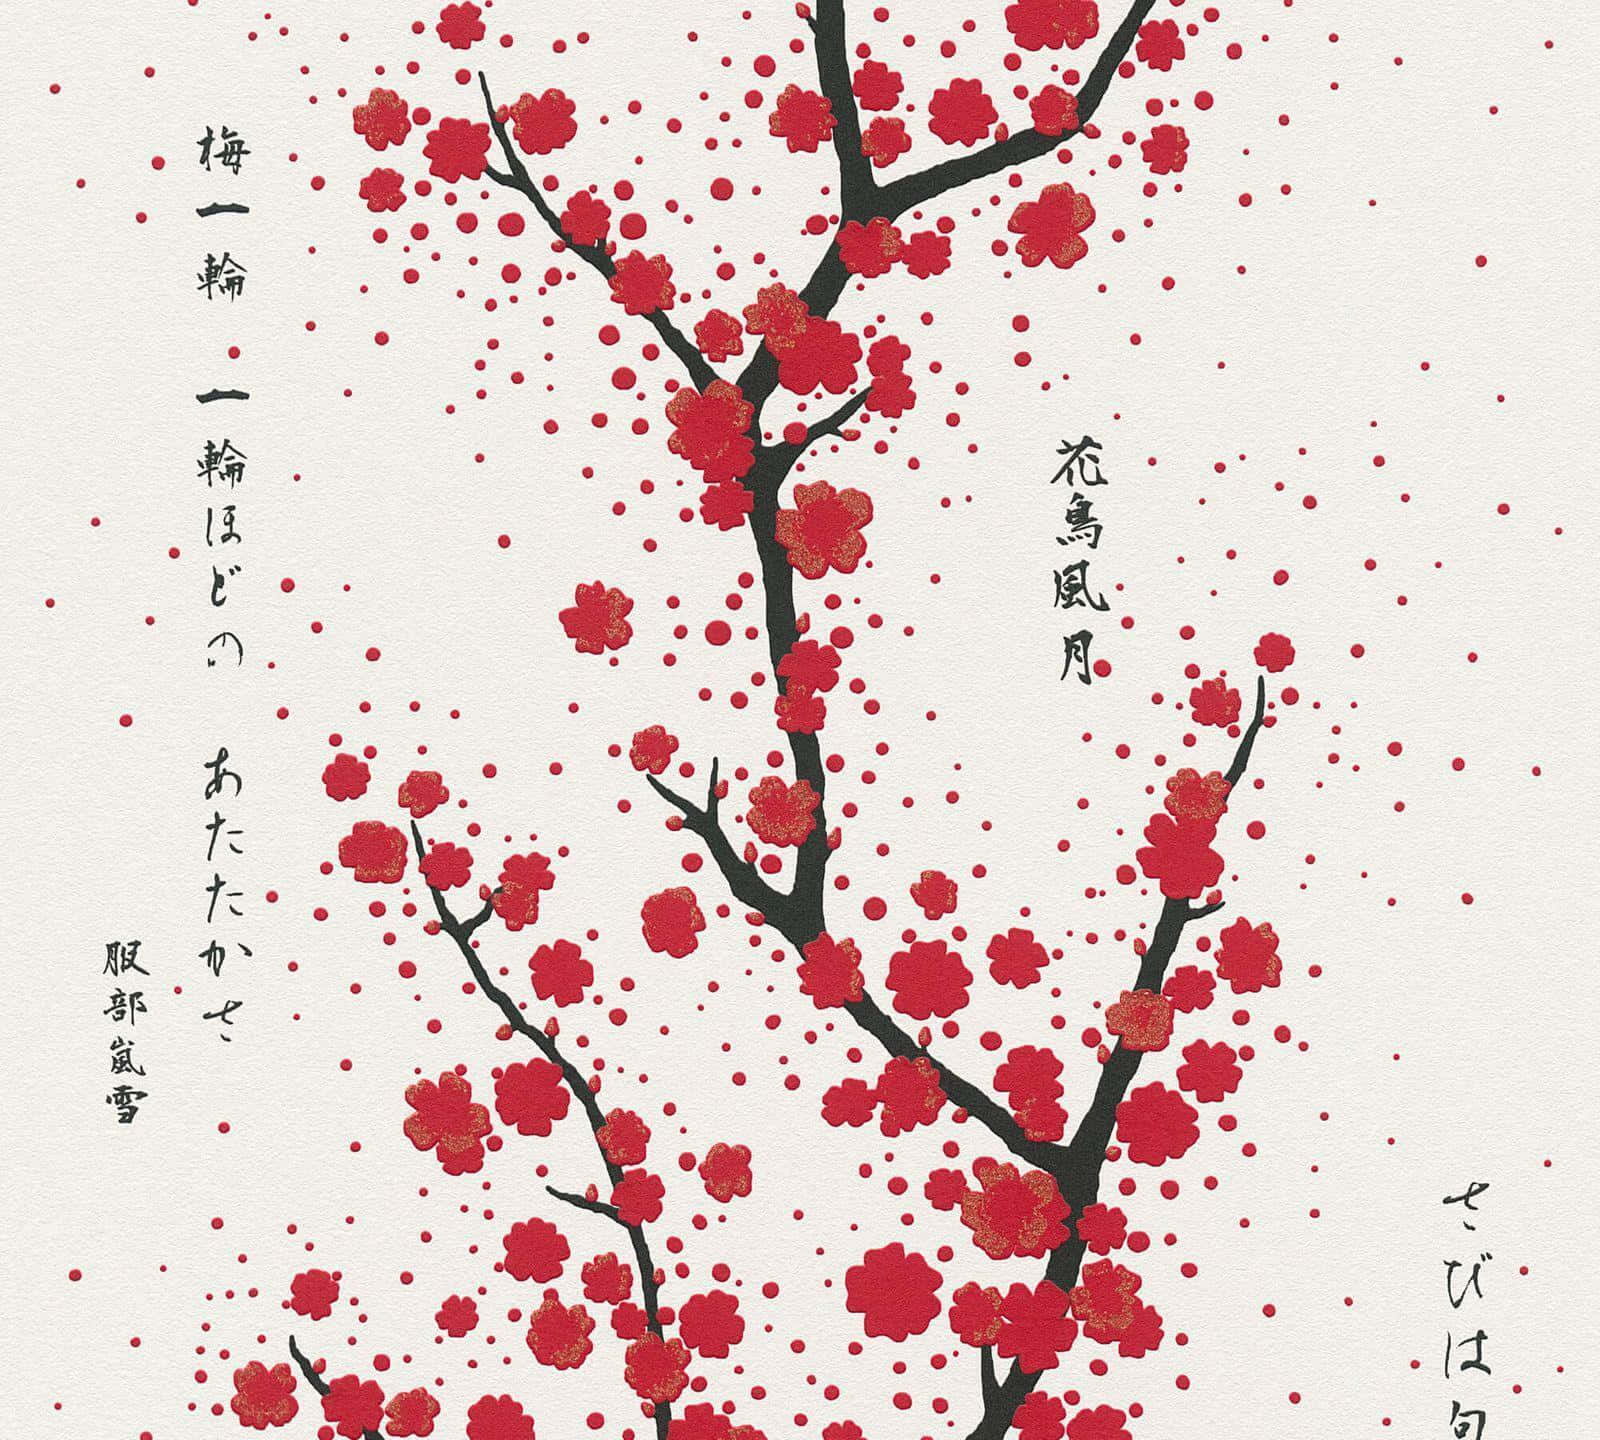 Einroter Kirschblütenbaum Mit Chinesischen Schriftzeichen. Wallpaper